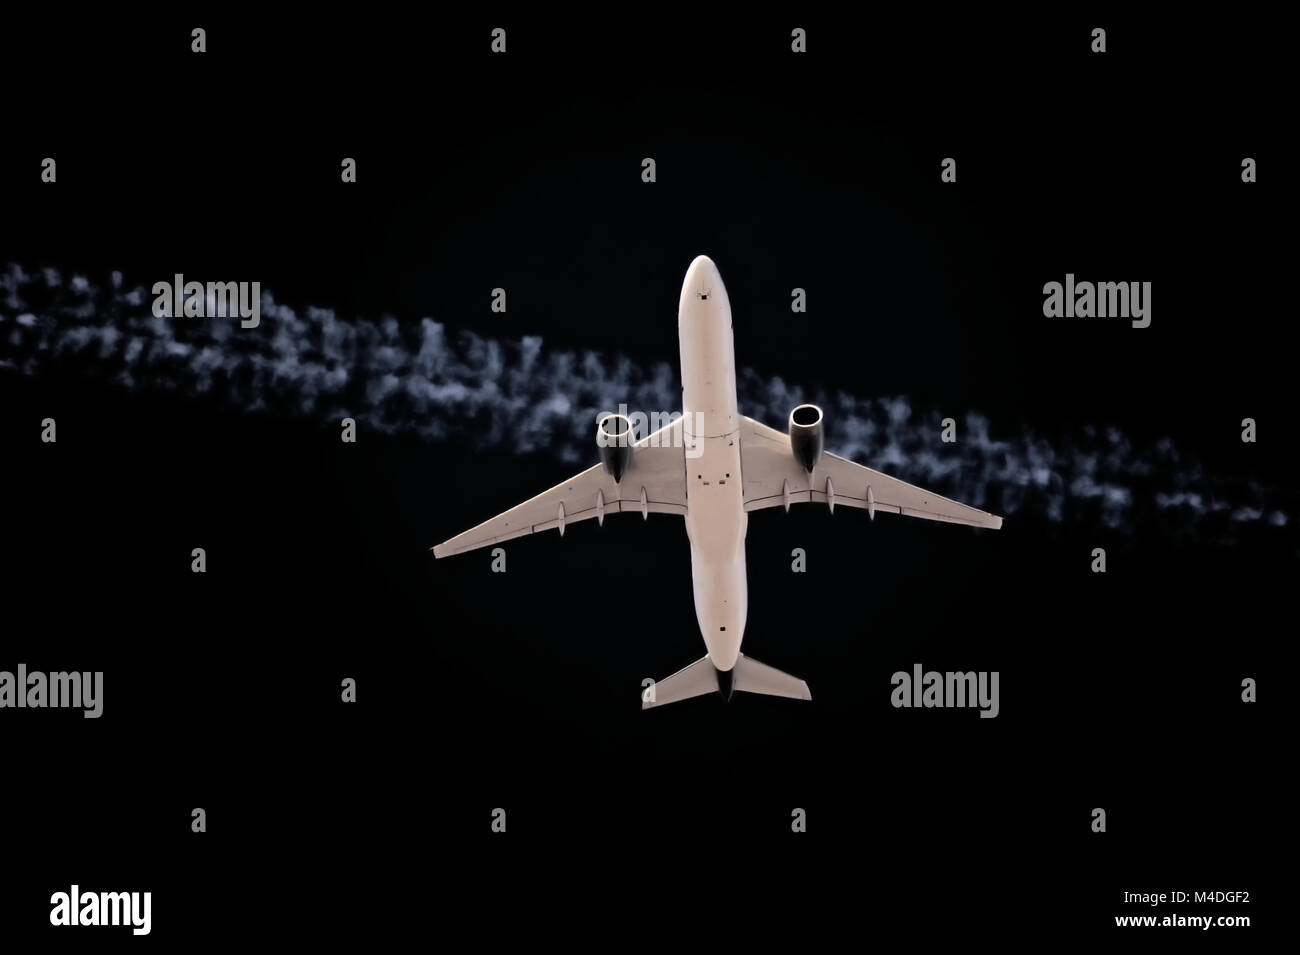 Starting aircraft at night Stock Photo